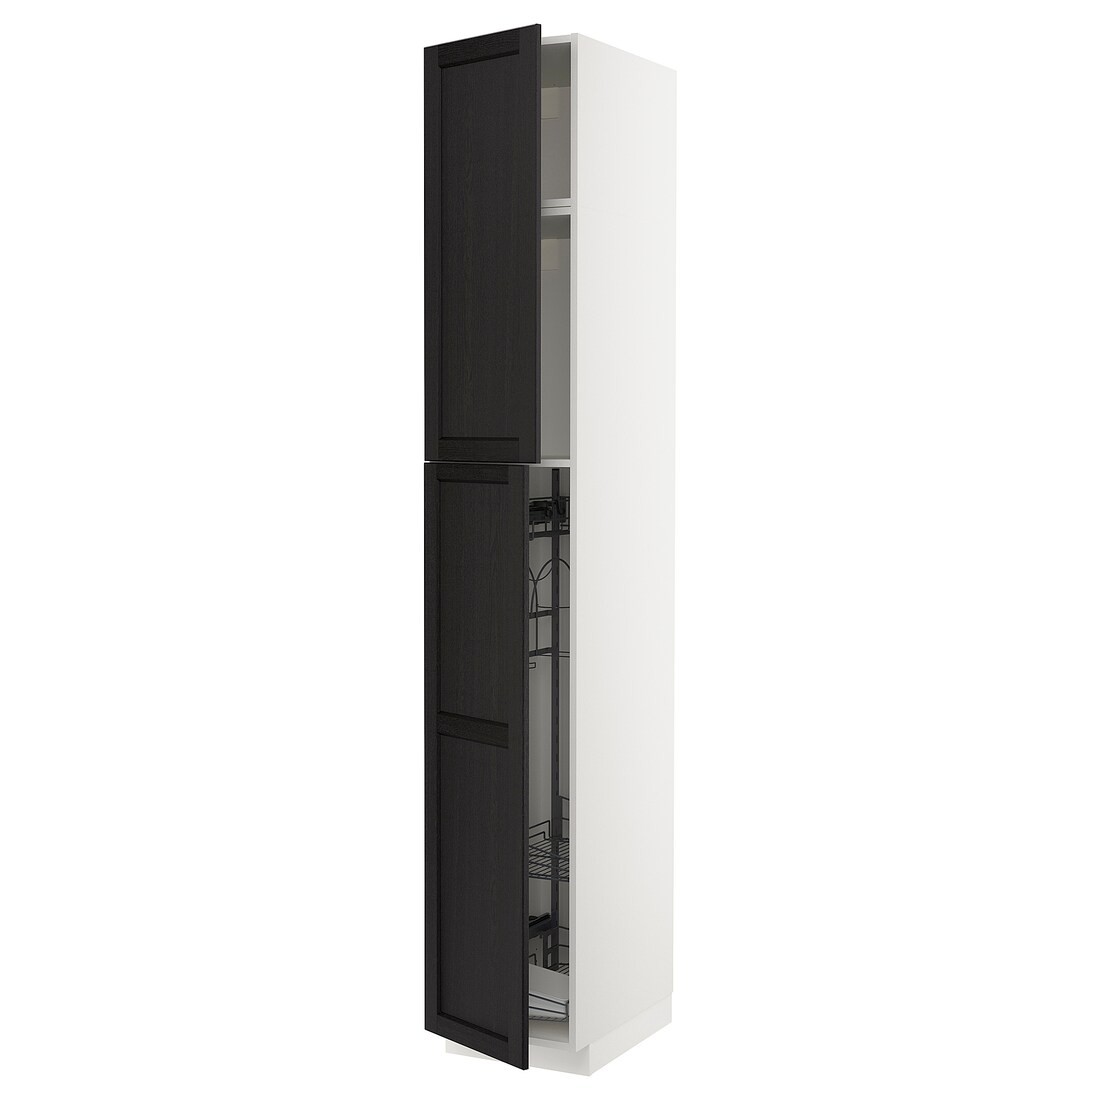 METOD МЕТОД Высокий шкаф с отделением для аксессуаров для уборки, белый / Lerhyttan черная морилка, 40x60x240 см